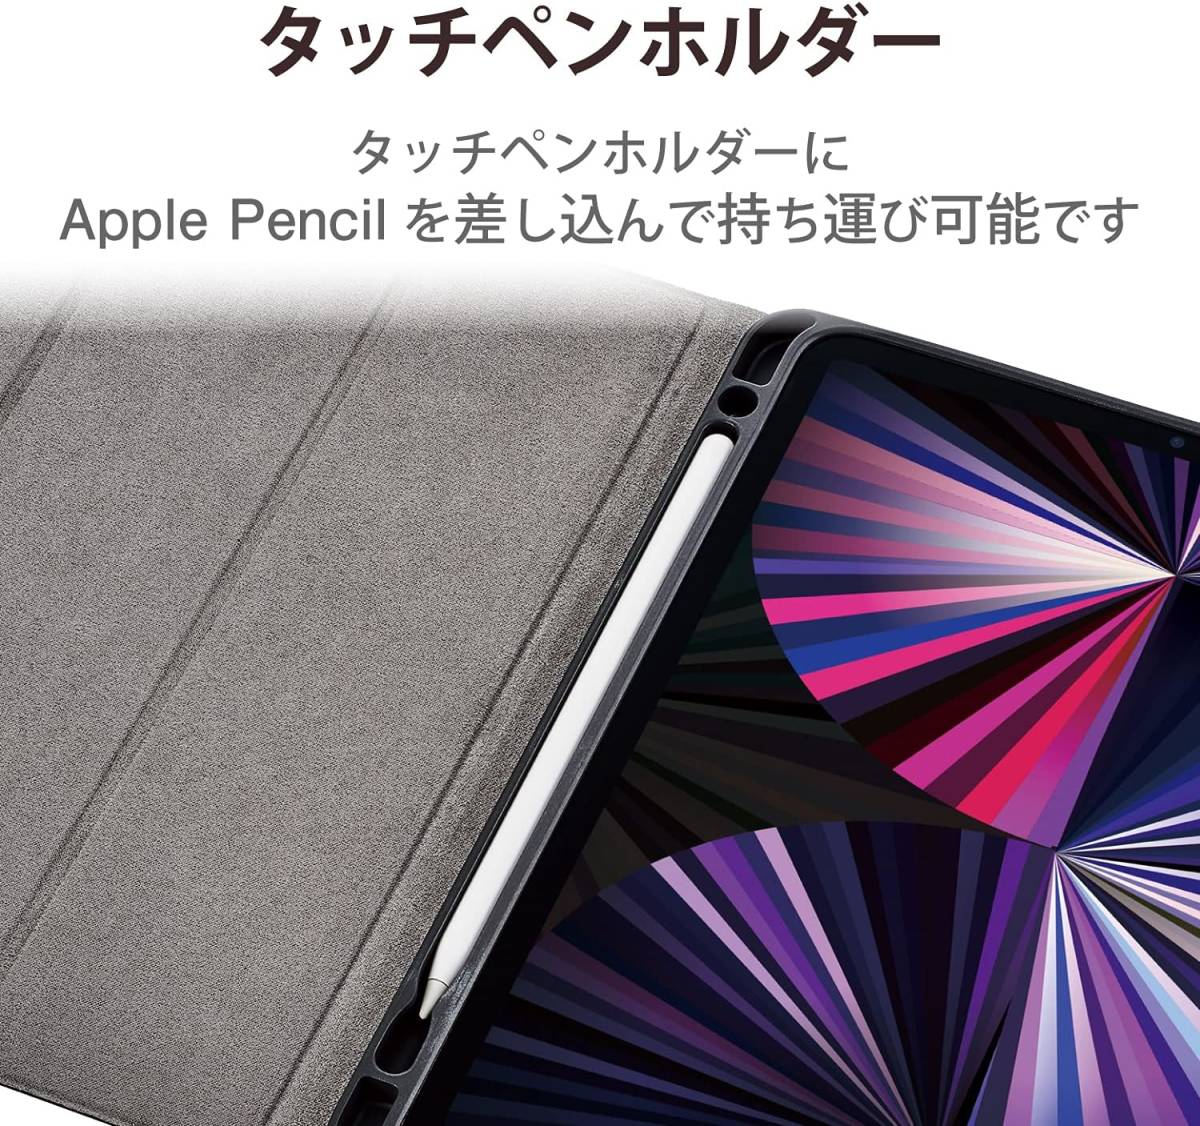 エレコム iPad Pro 11インチ 第4世代 第3世代 第2世代 (2022/2021/2020) ケース ソフトレザーカバー ブラック オートスリープ 手帳型 758